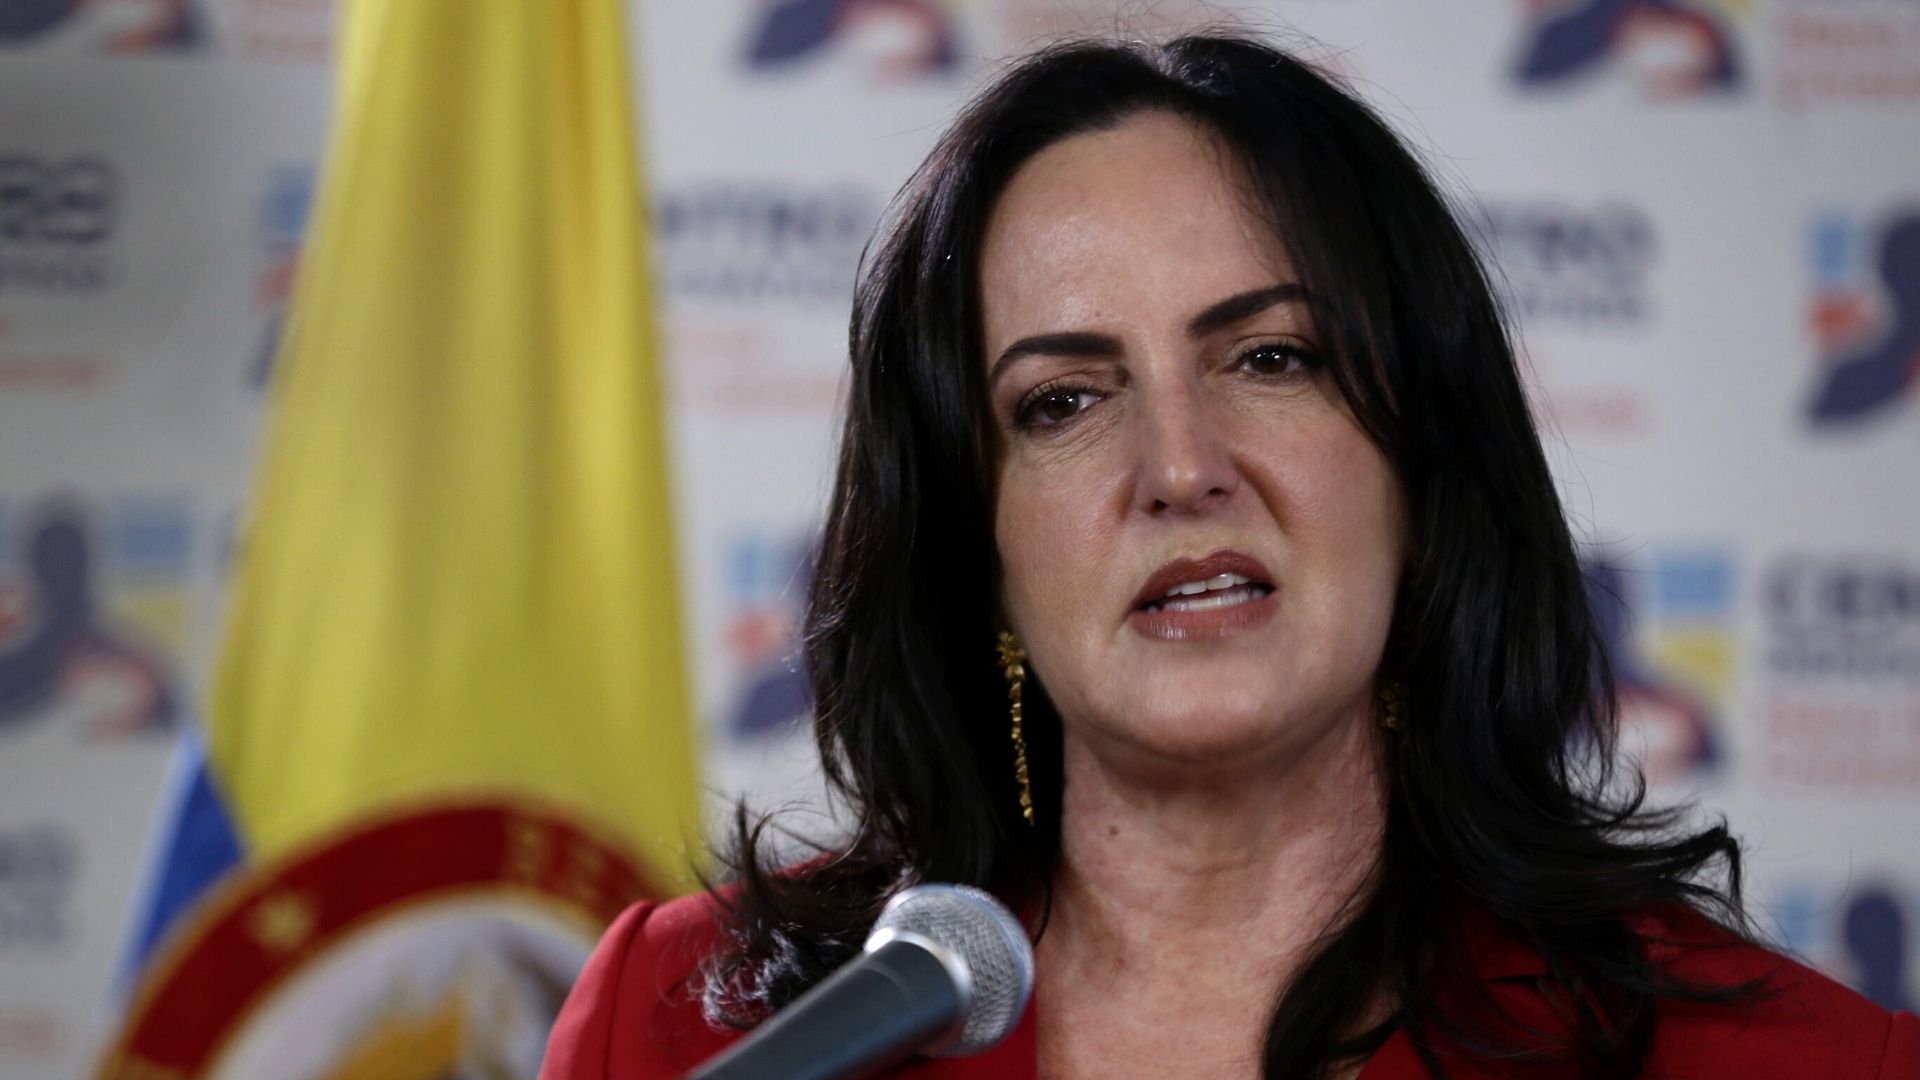 María Fernanda Cabal y otros políticos reaccionan a la amenaza contra el juez que condenó a miembros de la primera línea